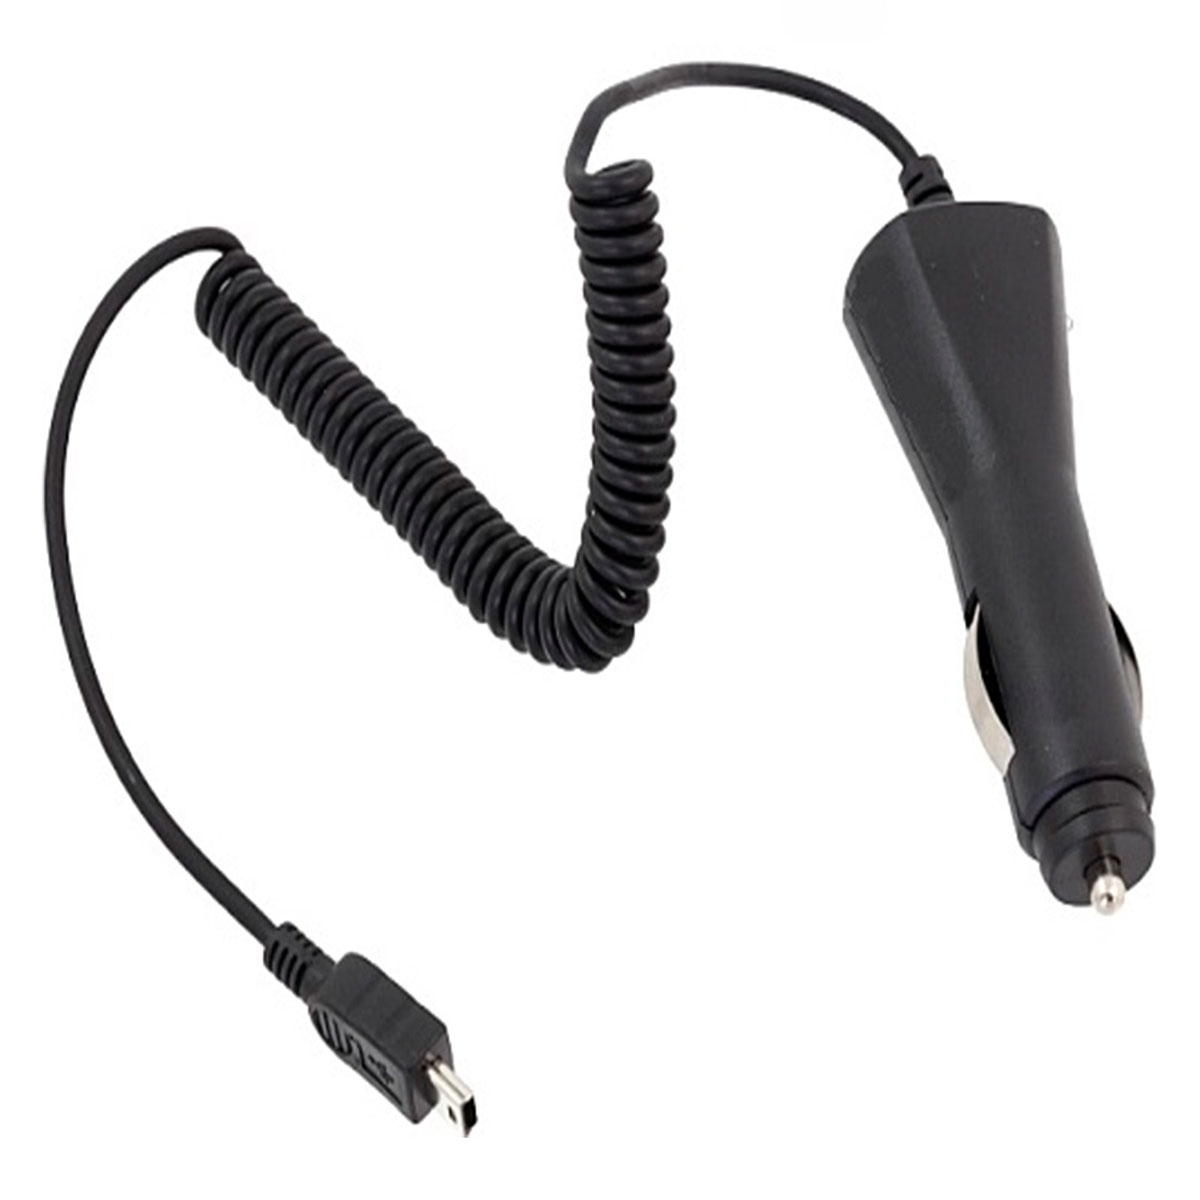 АЗУ (Автомобильное зарядное устройство) LCH-9 V3 для Mini USB, витой кабель, цвет черный